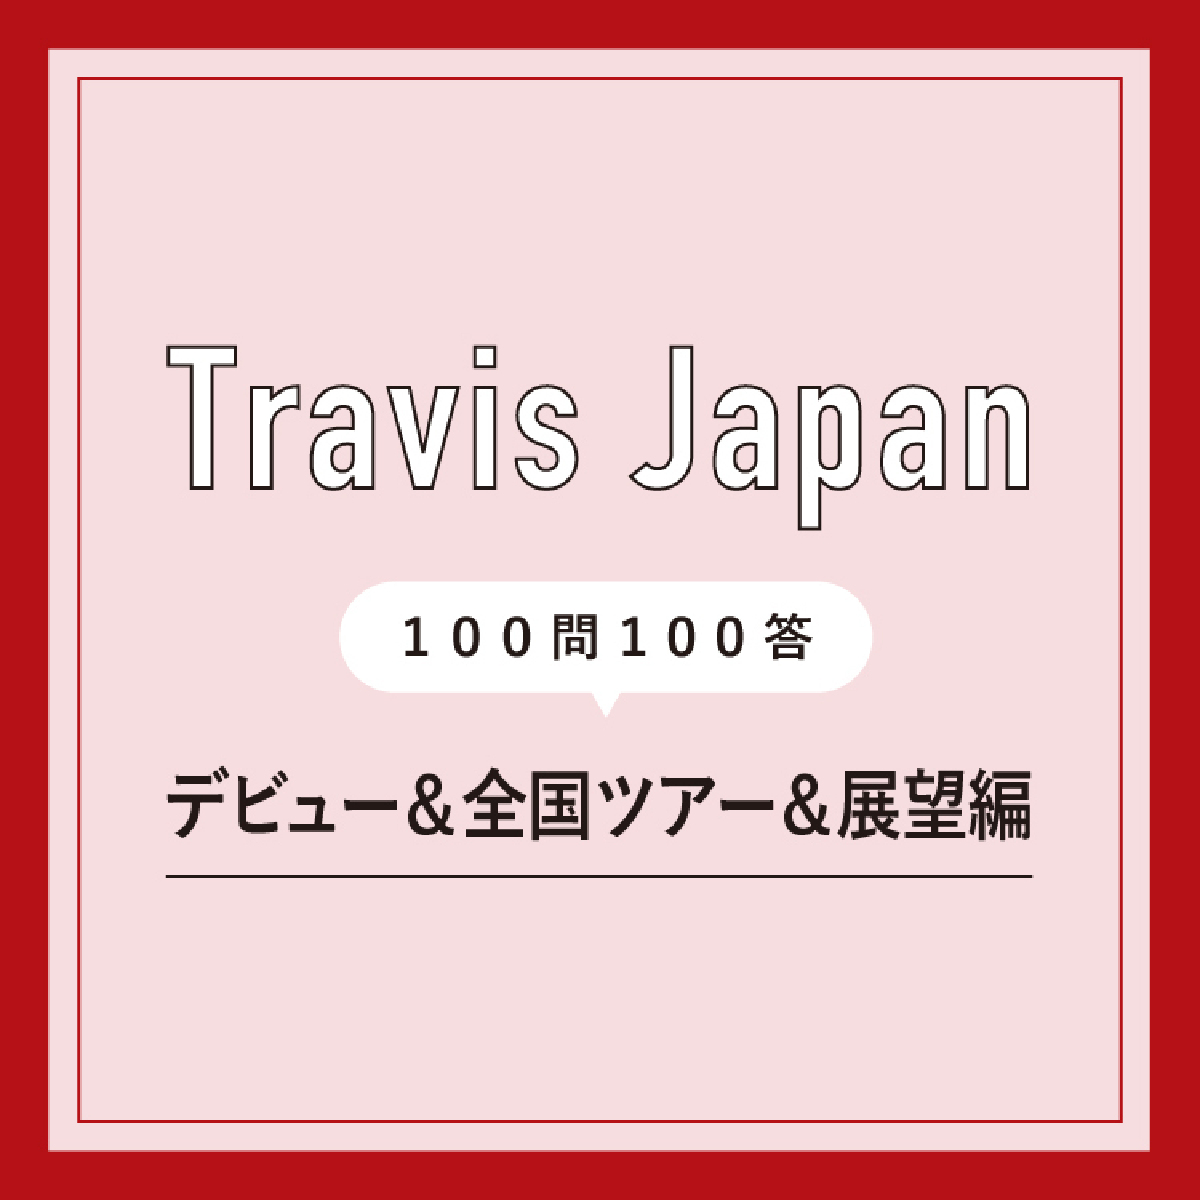 Travis Japanメンバーがトラジャ担と一緒にしたいことは「直接会って交流できるイベントをできたらいいな」